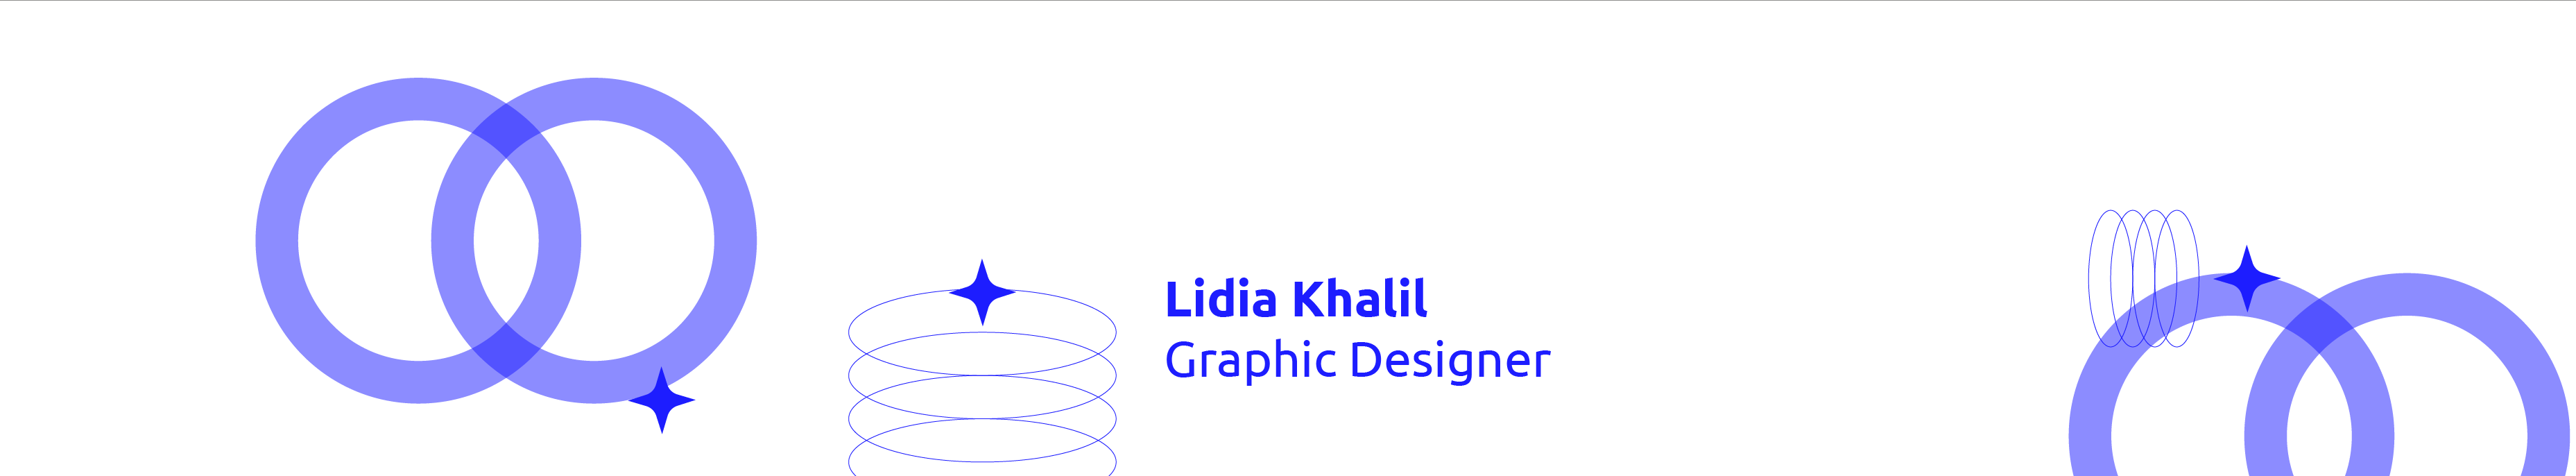 Banner de perfil de Lidia Khalil